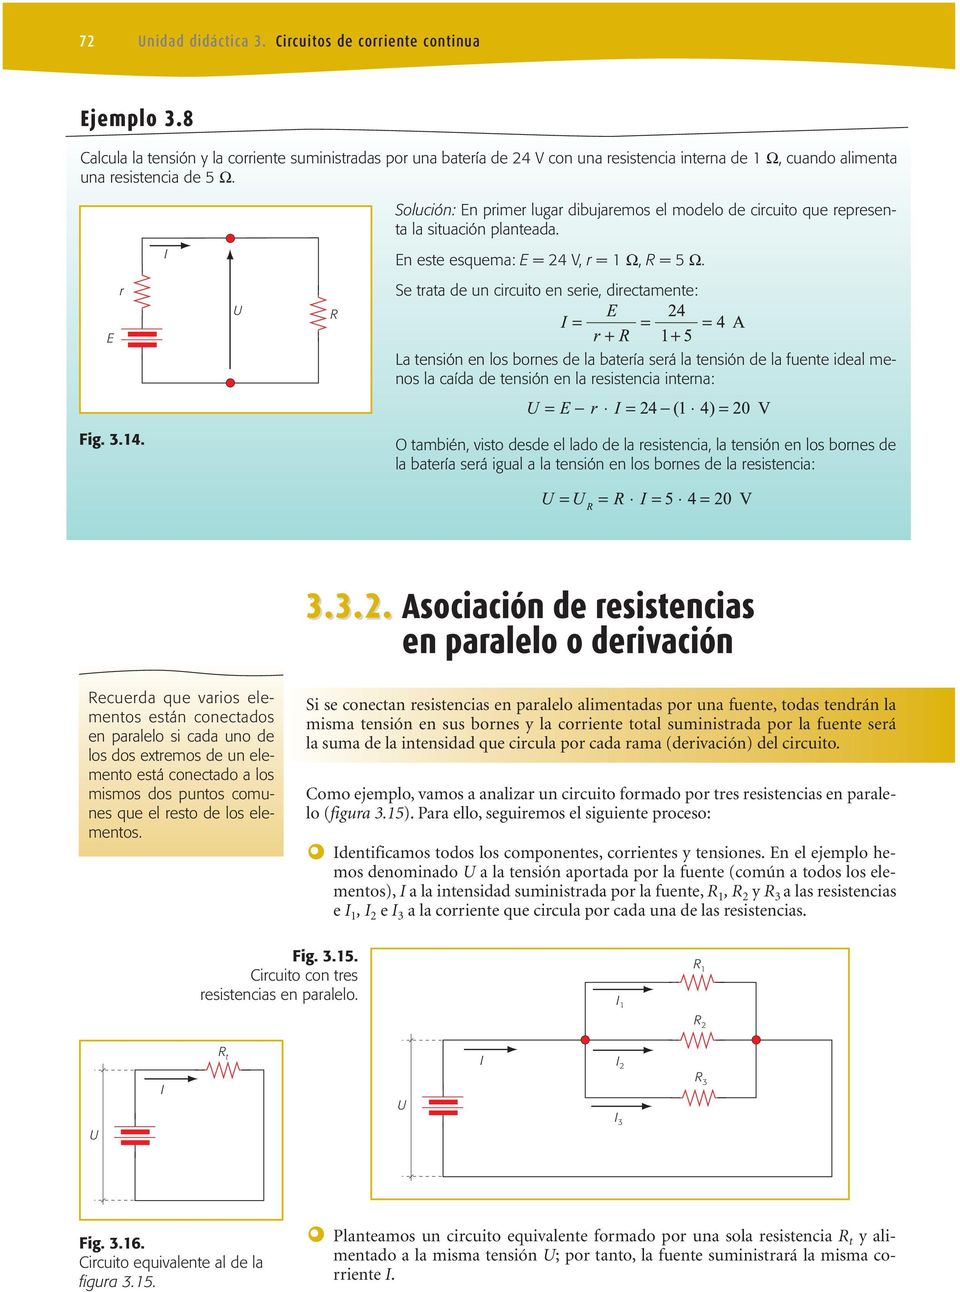 Solución: En primer lugar dibujaremos el modelo de circuito que representa la situación planteada. En este esquema: E = 24 V, r = 1 Ω, R = 5 Ω.